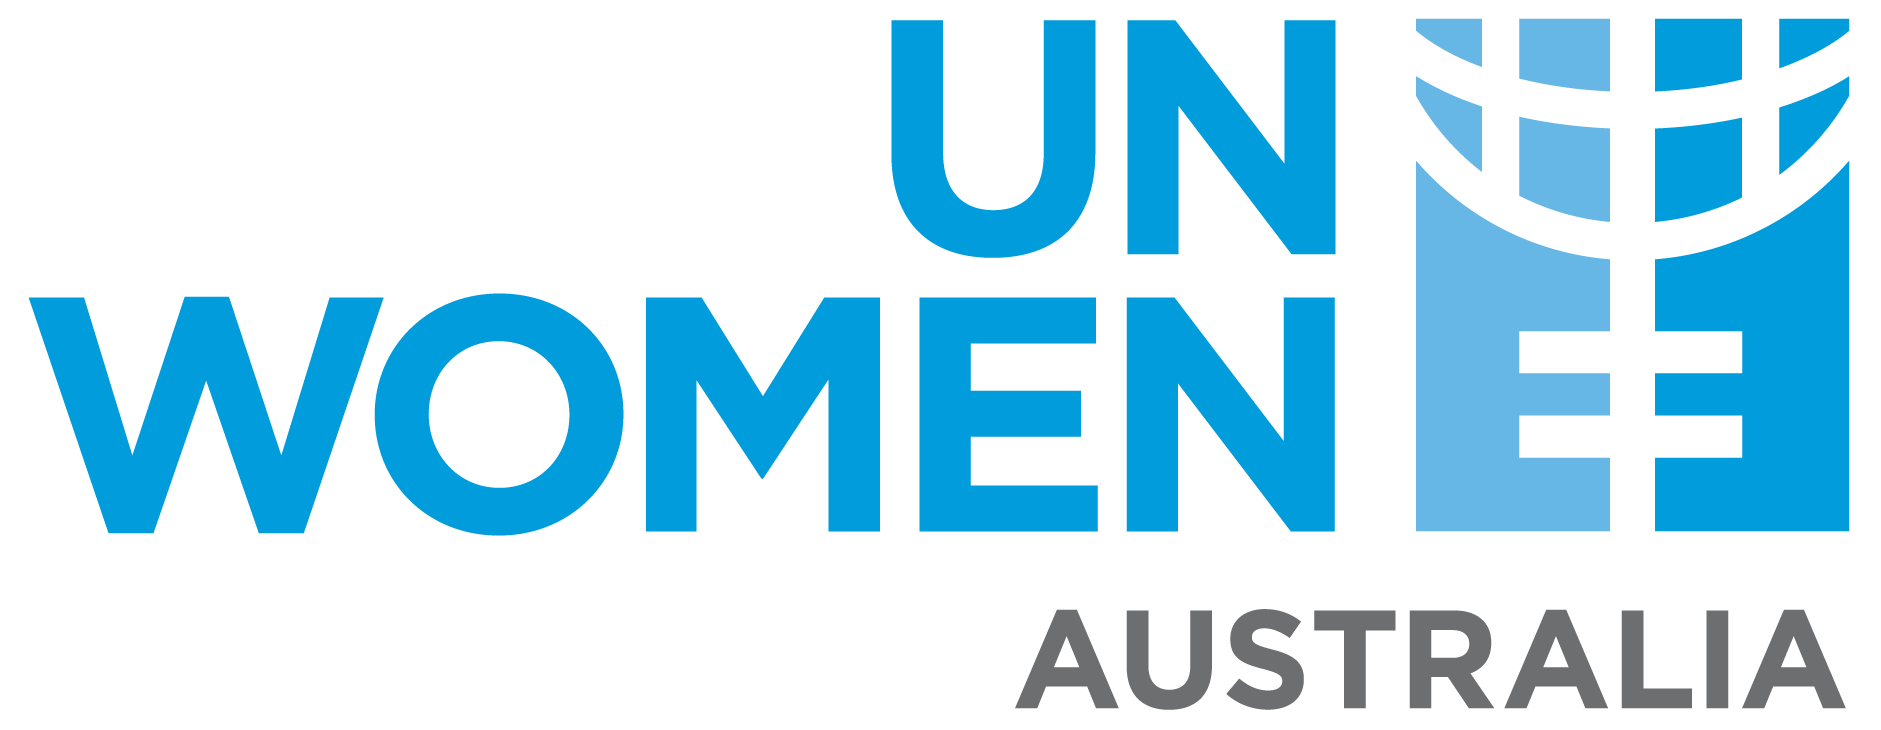 UN Women Australia